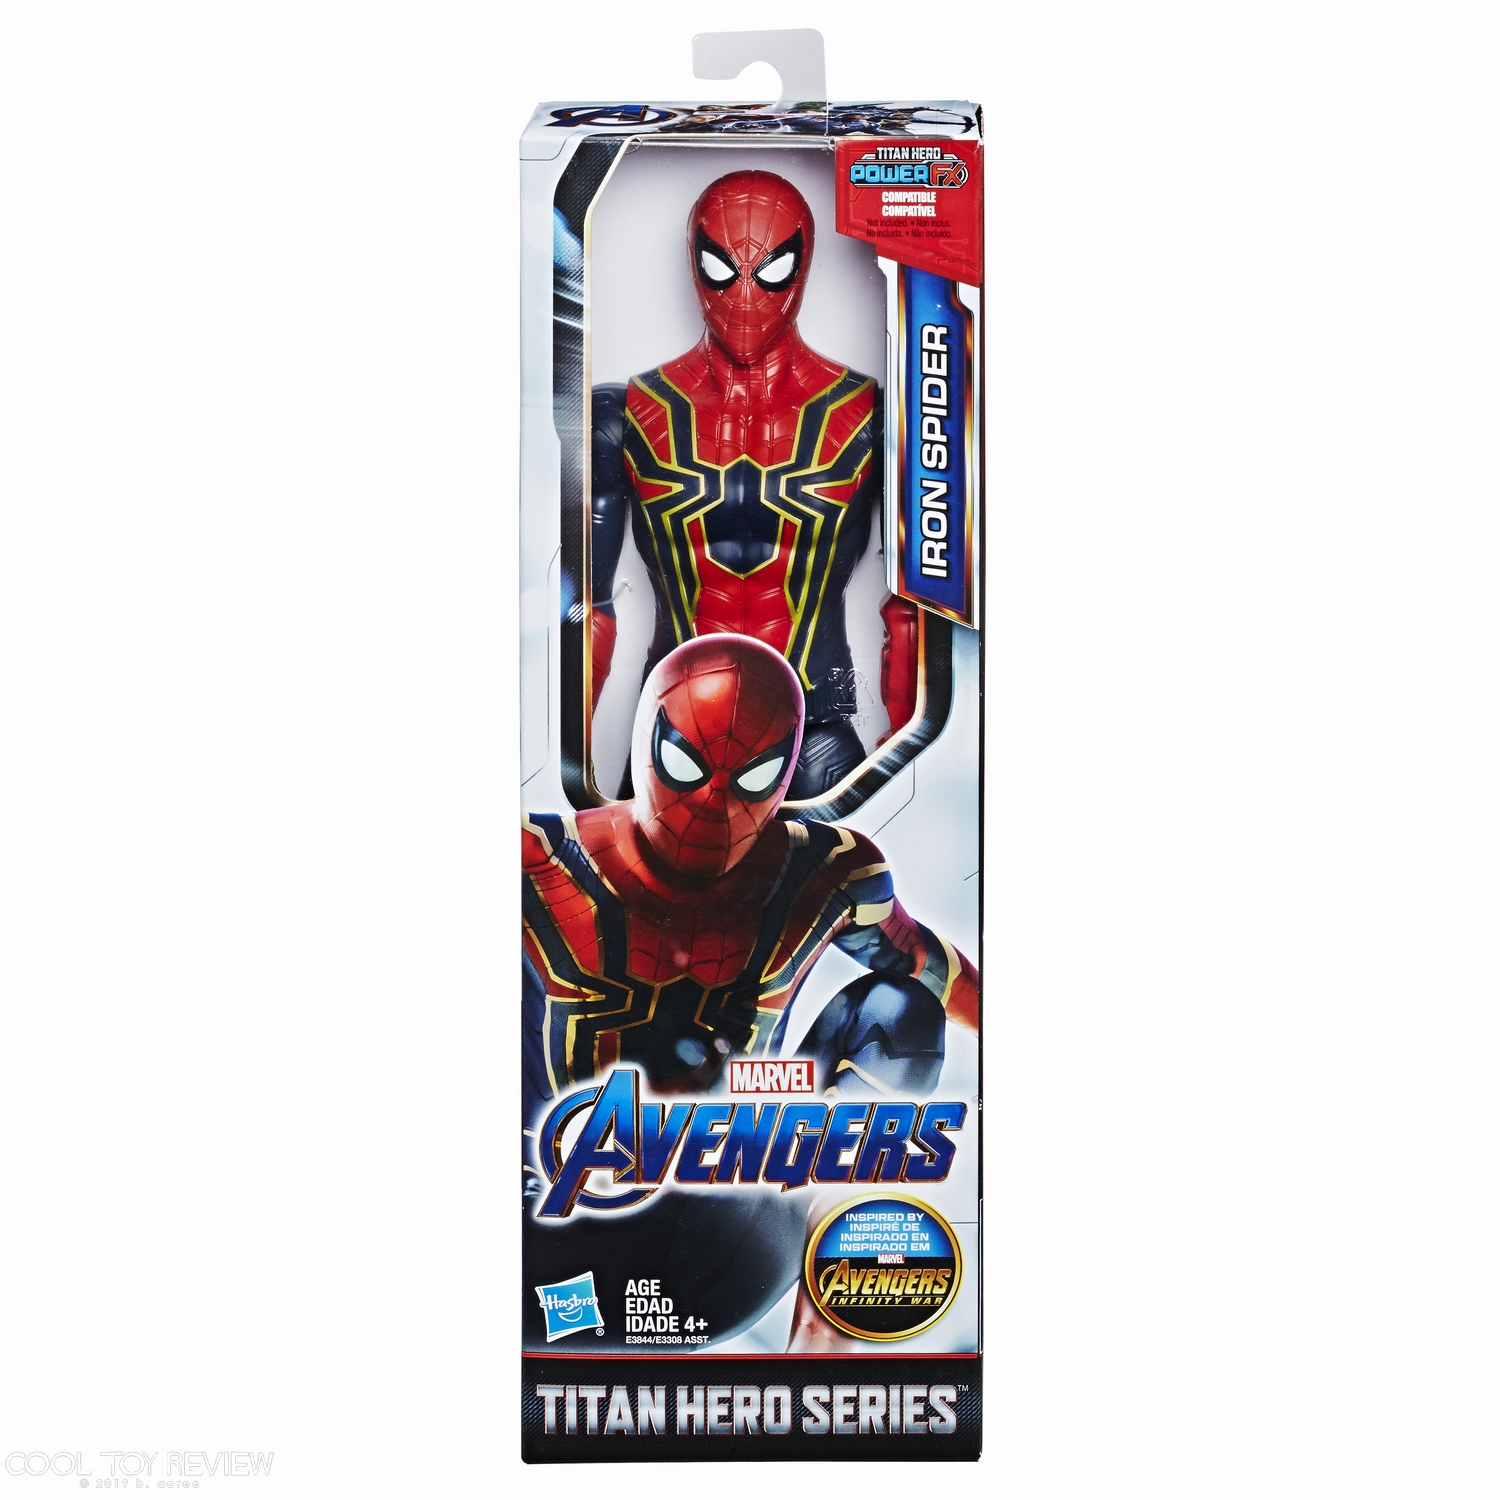 MARVEL AVENGERS ENDGAME TITAN HERO SERIES 12-INCH Figure Assortment - Iron Spider (in pck).jpg